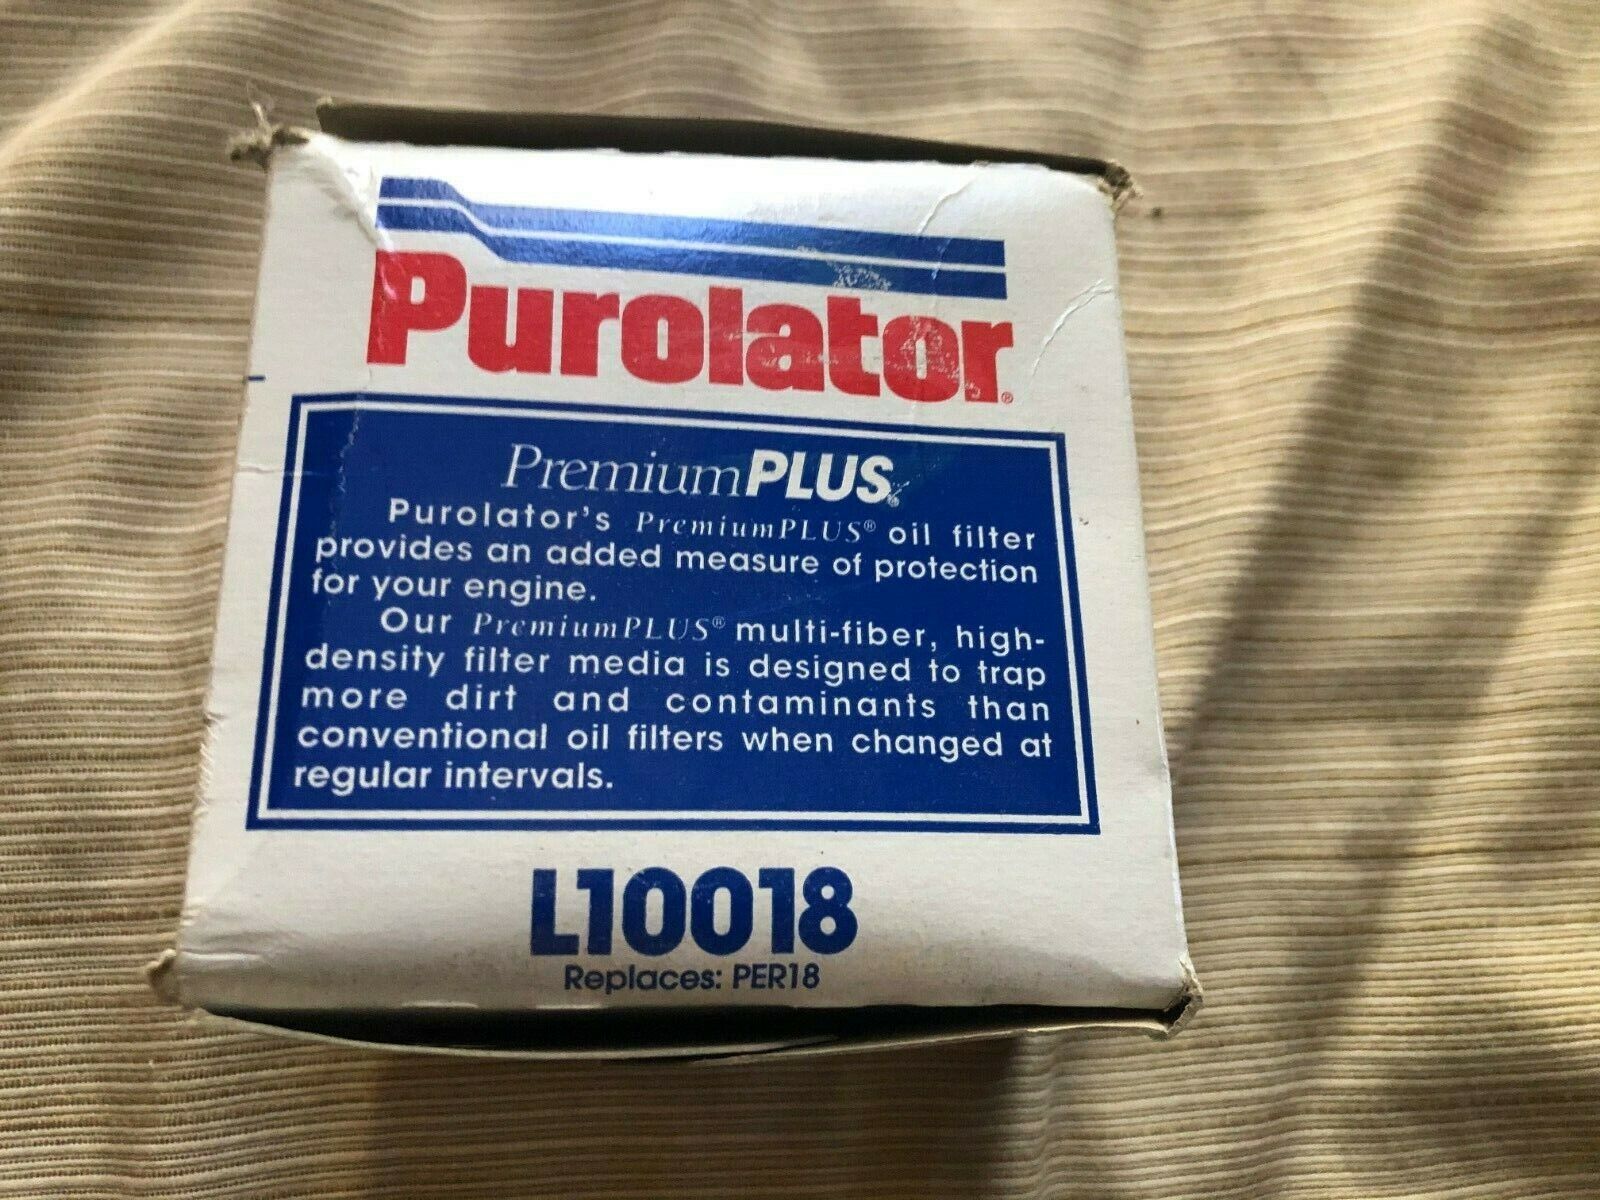 Purolator Premium Plus oil filter L10018 replaces Per18